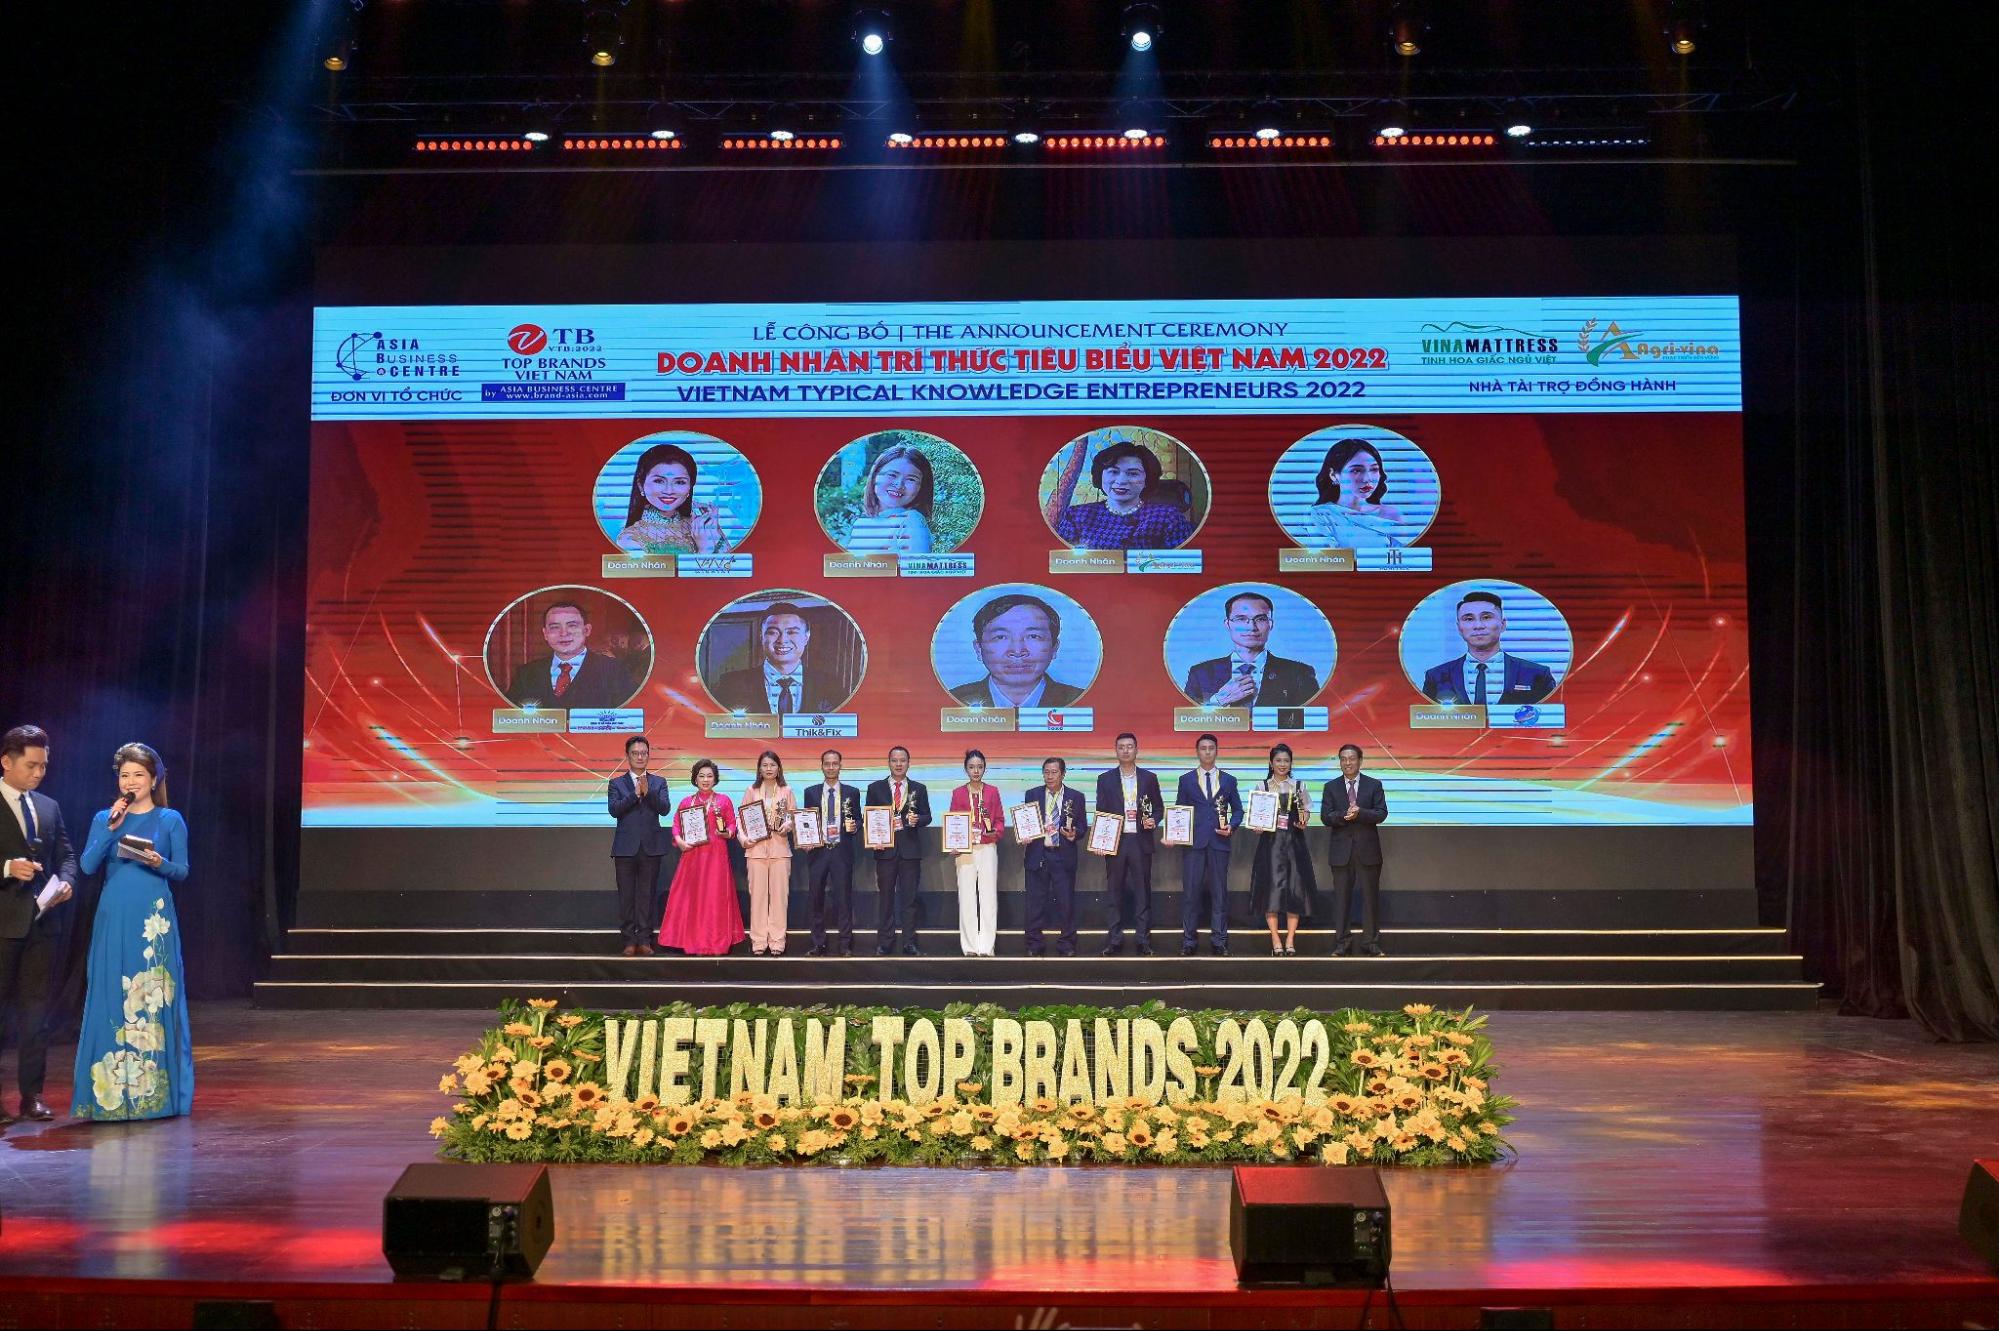 Bà Nguyễn Hương Ly nhận giải thưởng Doanh nhân trí thức tiêu biểu năm 2022 - Ảnh 1.